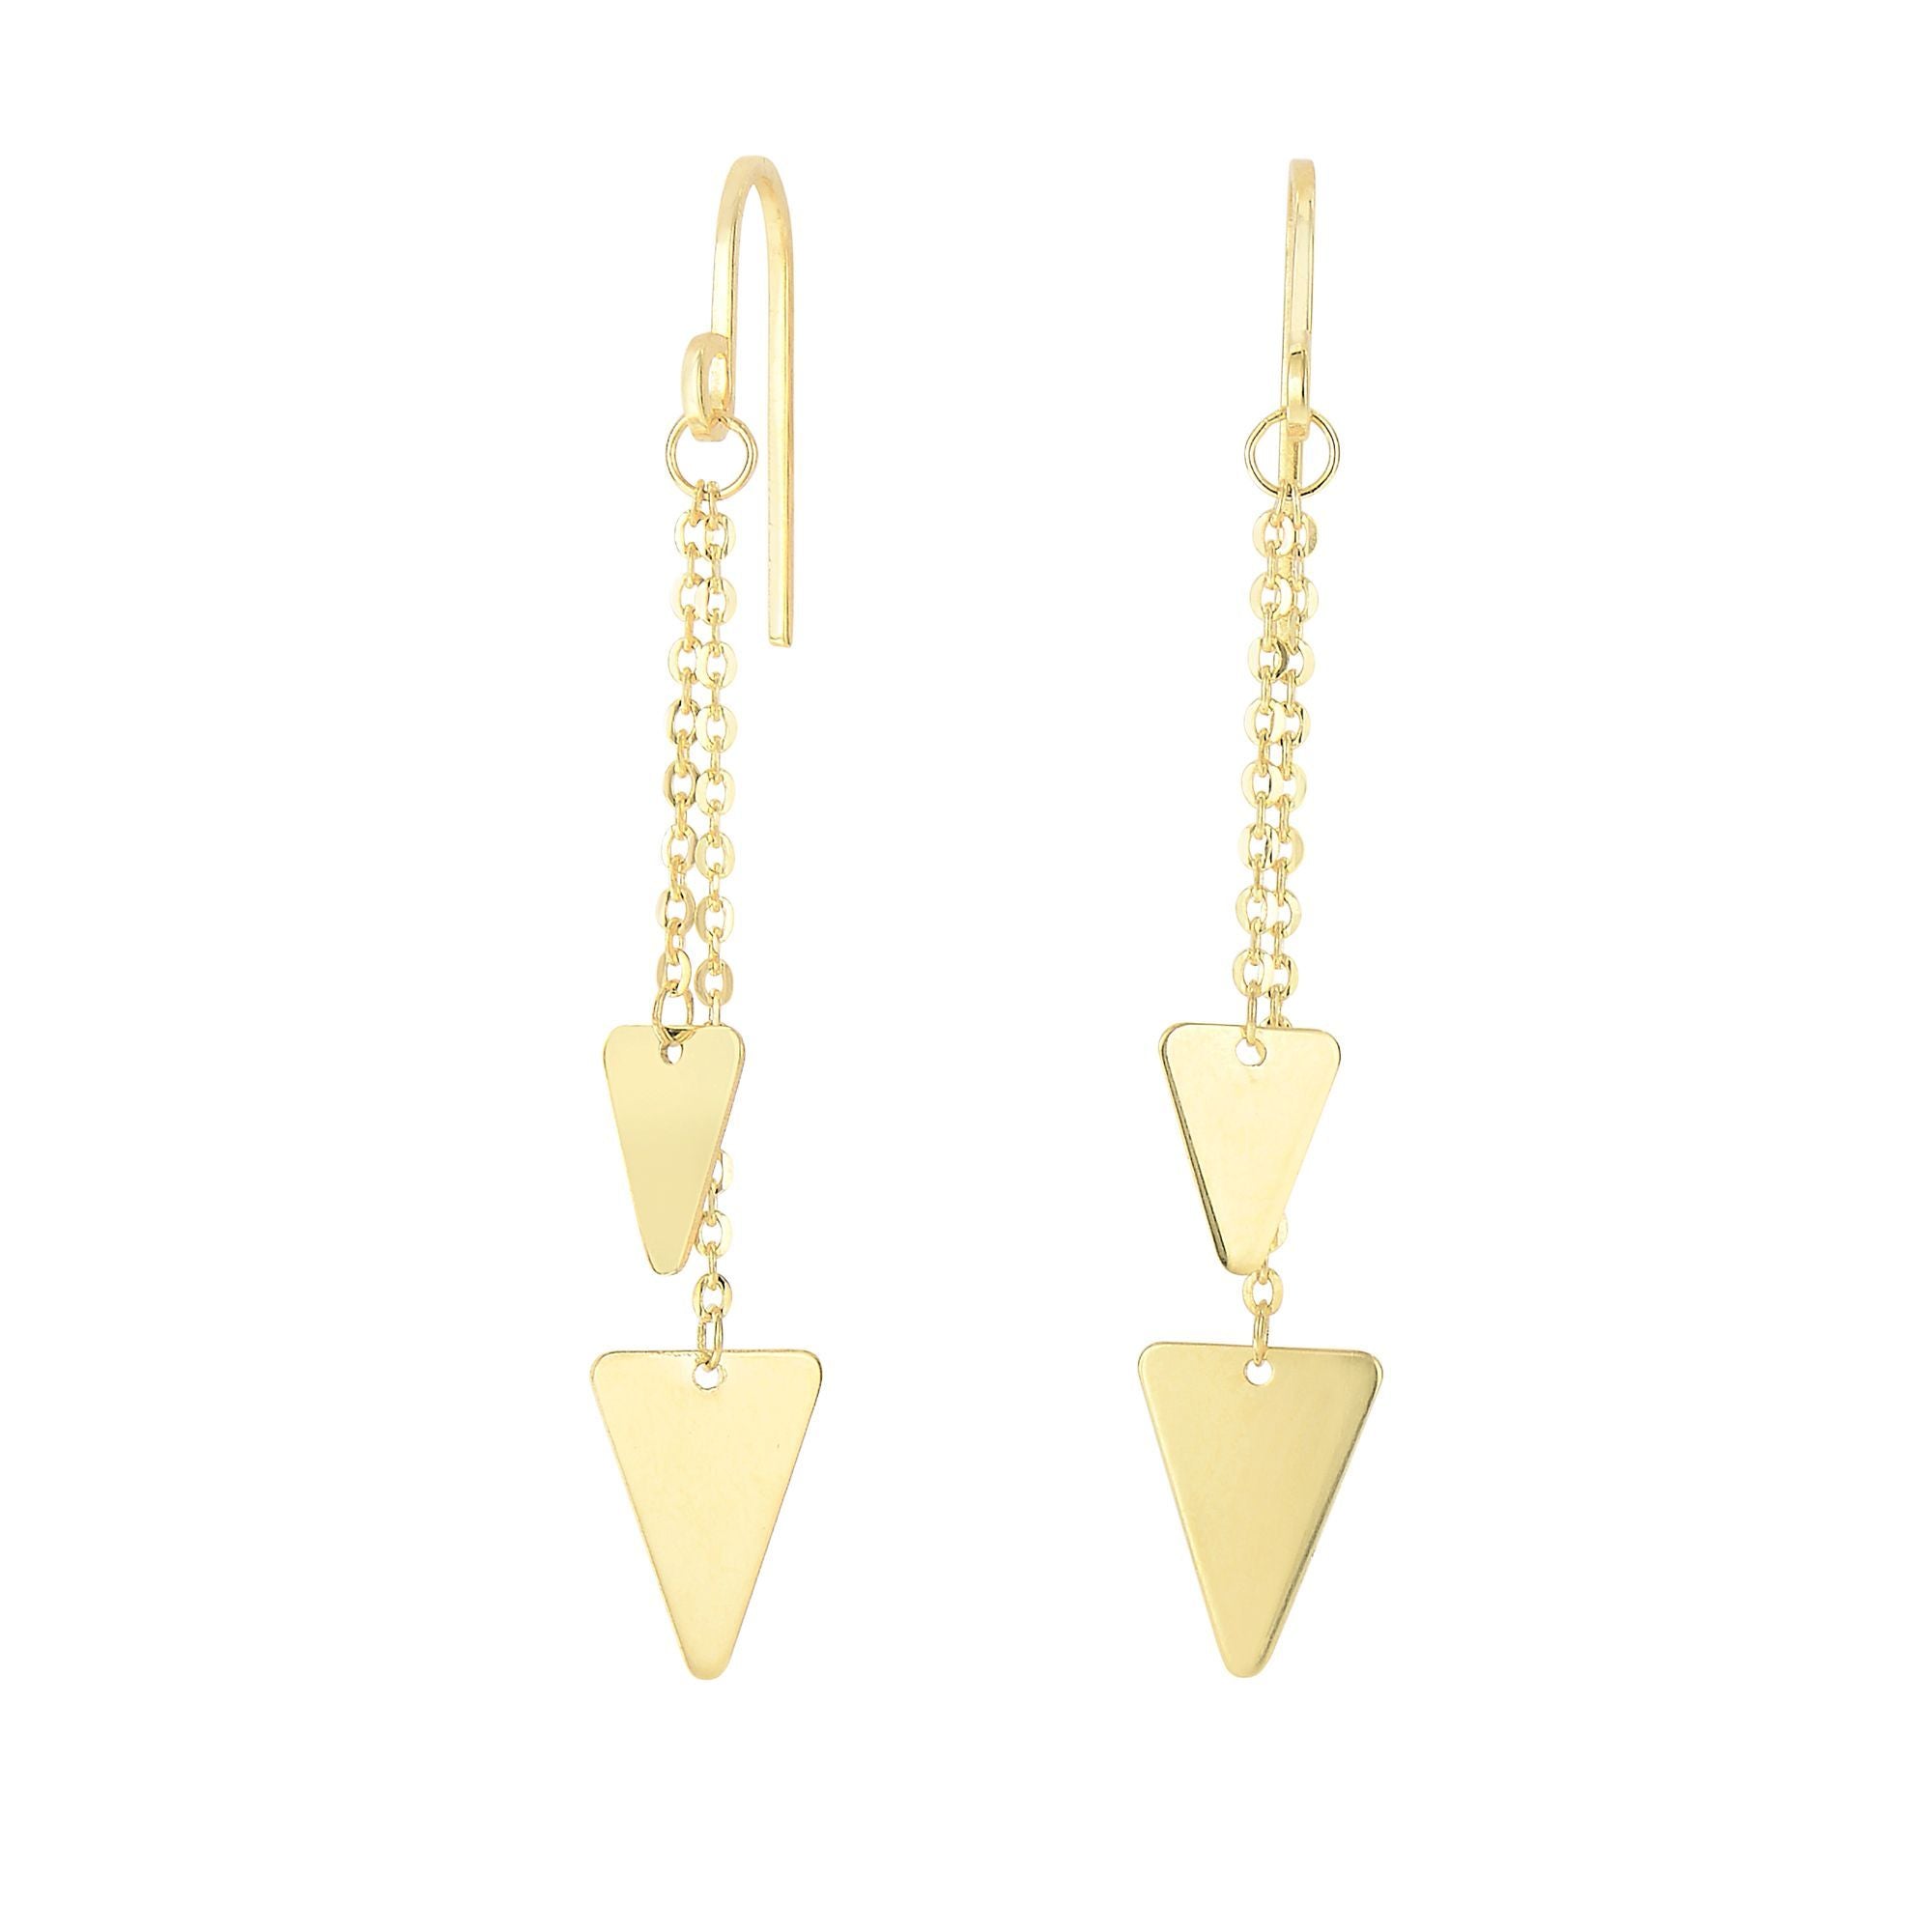 14K gult guld hängande triangel charm örhängen fina designersmycken för män och kvinnor